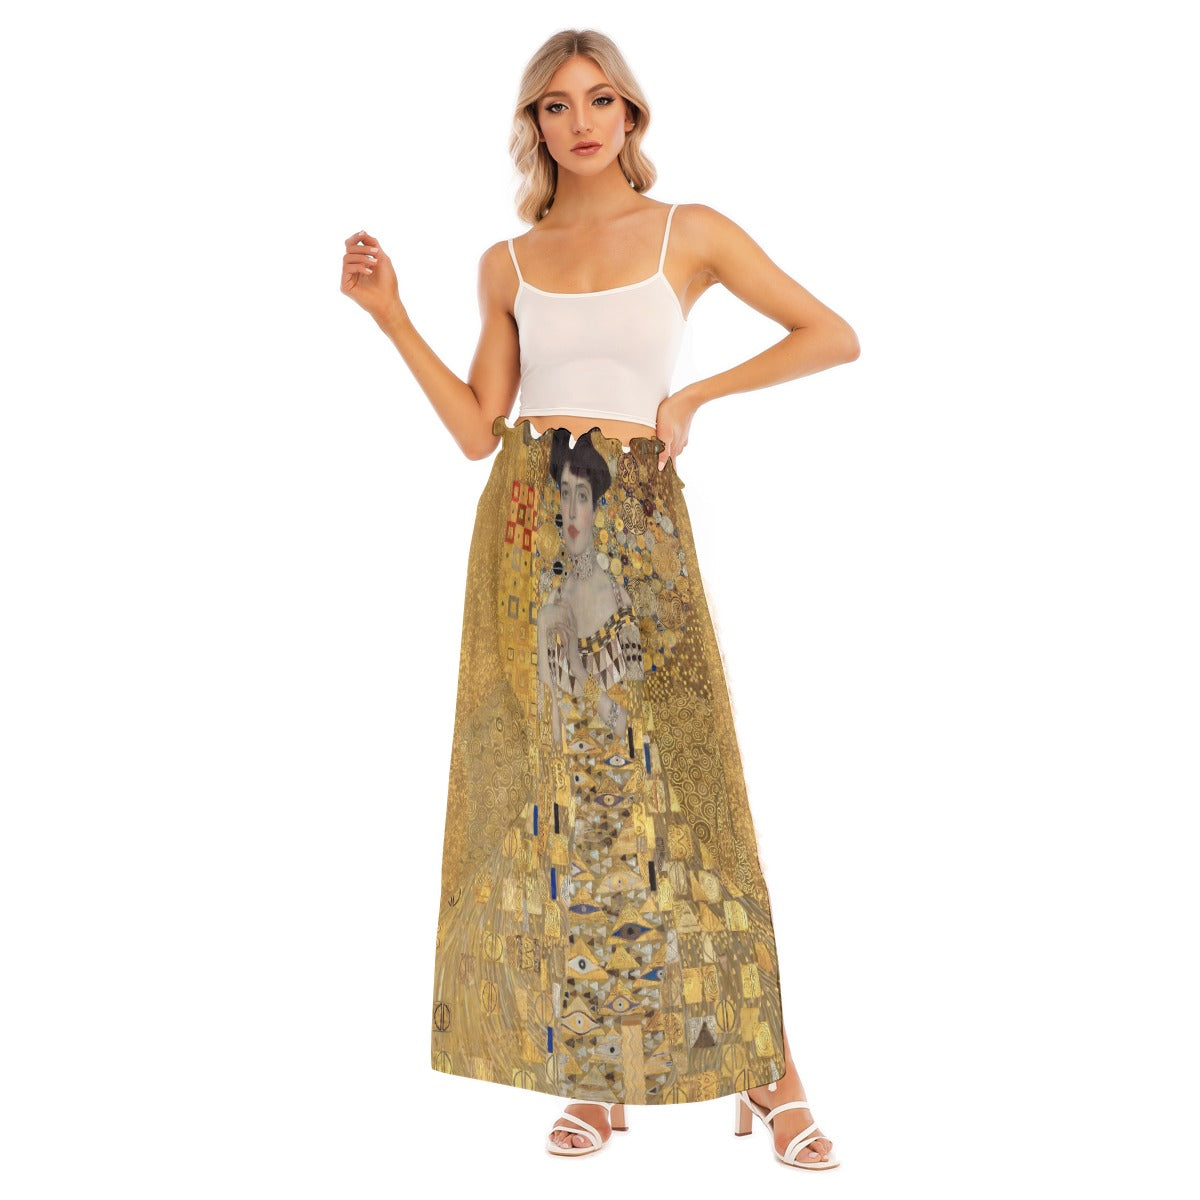 Stunning side split skirt inspired by Gustav Klimt's "The Lady in Gold"